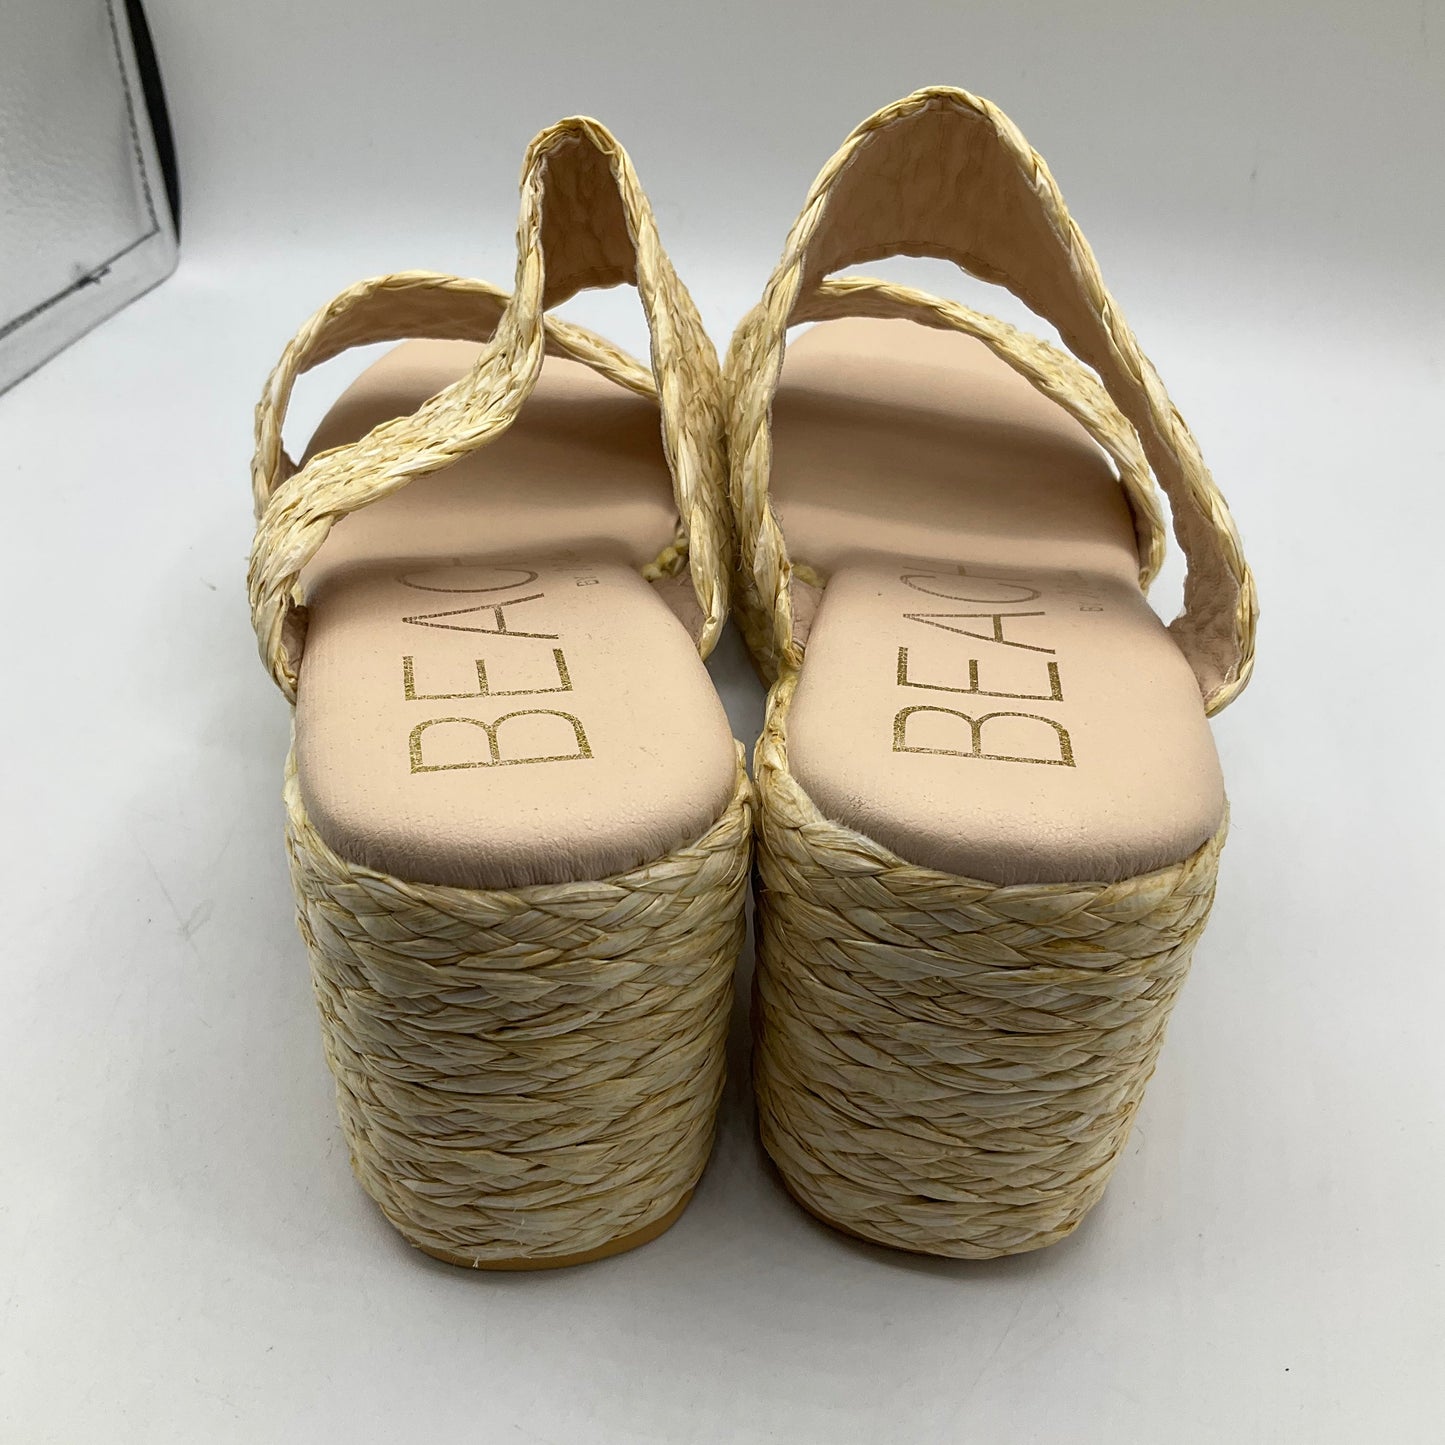 Tan Sandals Heels Block Matisse, Size 10